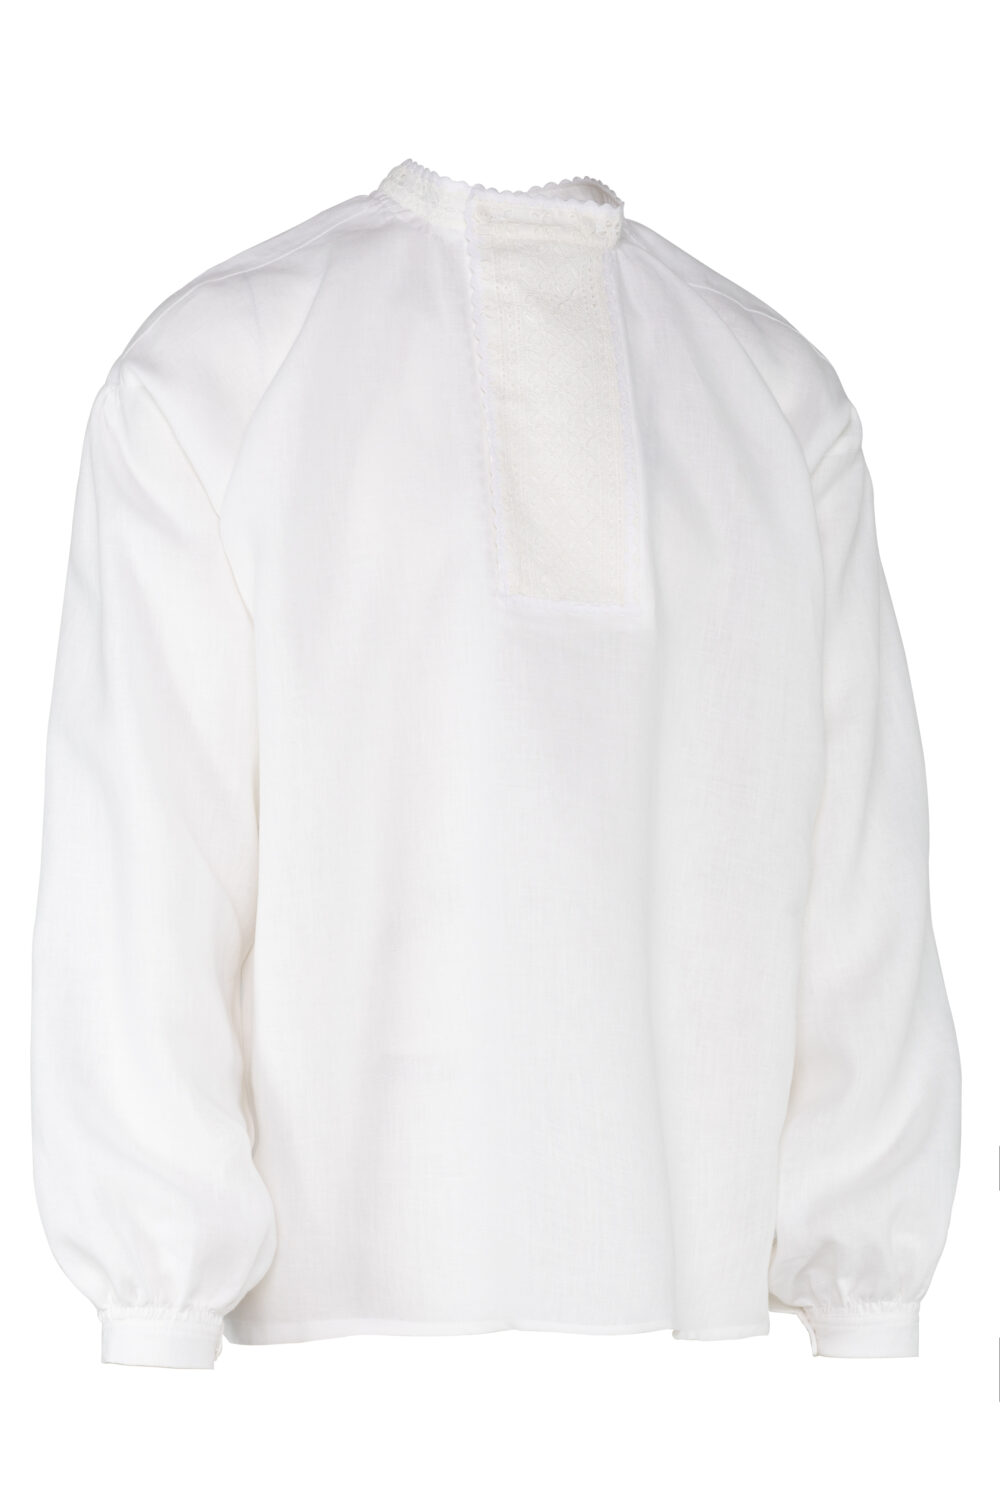 Dzūkiški ar suvalkietiški vyriški marškiniai su apykakle Mrš371